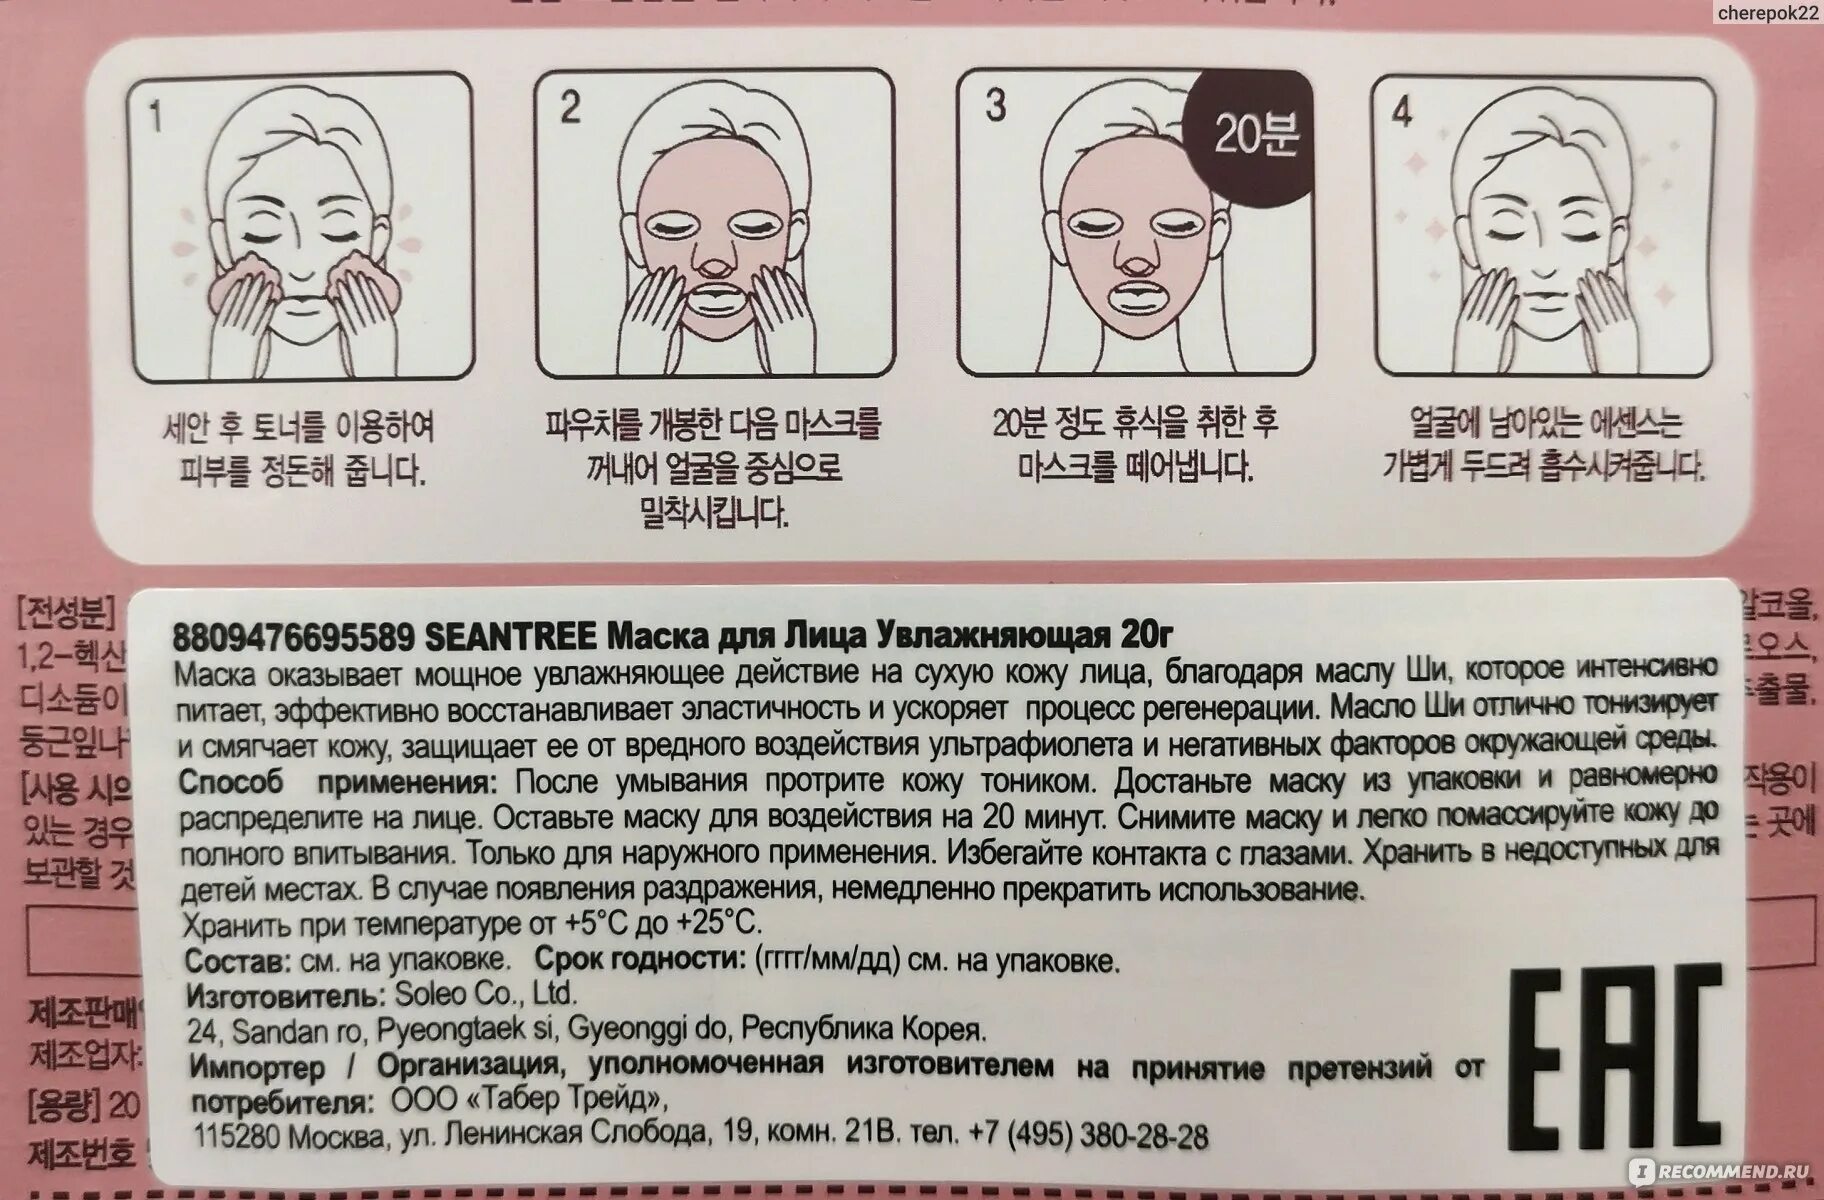 Маски для лица тканевые инструкция. Корейская маска для воздействия. Тканевая маска для лица как пользоваться. Тканевая маска для лица как пользоваться правильно корейская. Как использовать корейские маски для лица